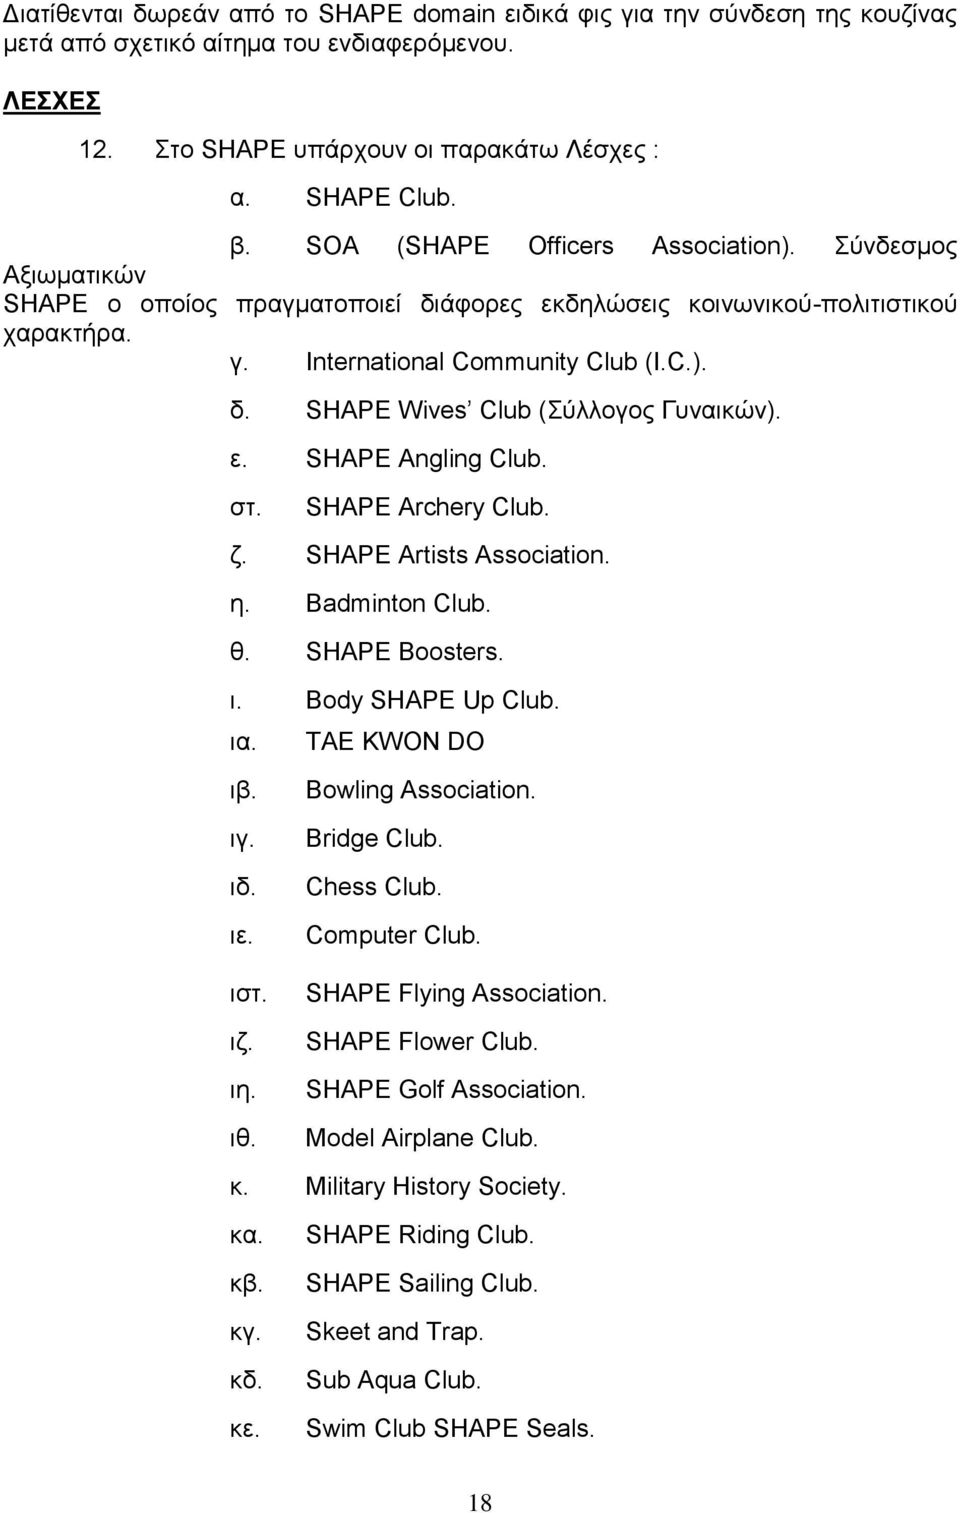 ε. SHAPE Angling Club. στ. SHAPE Archery Club. ζ. SHAPE Artists Association. η. Badminton Club. θ. SHAPE Boosters. ι. Body SHAPE Up Club. ια. TAE KWON DO ιβ. ιγ. ιδ. ιε. ιστ. ιζ. ιη. ιθ.